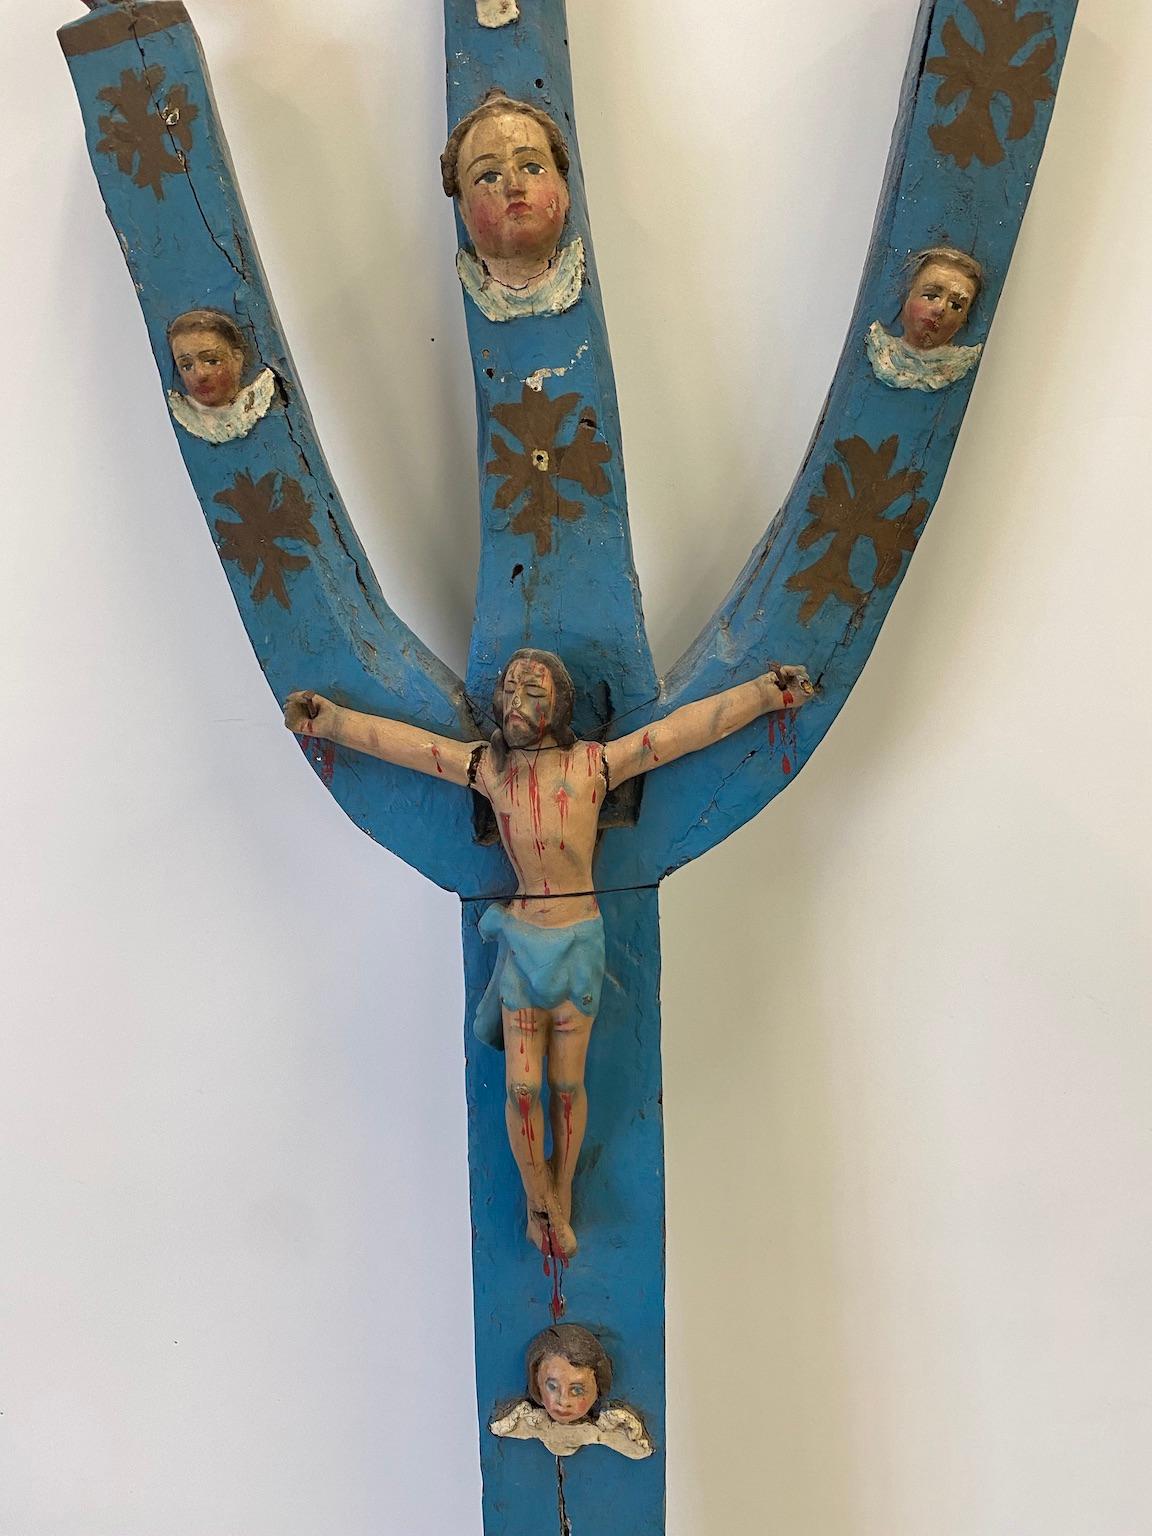 Ce crucifix en bois sculpté représentant le Christ sur une forme d'arbre stylisé est guatémaltèque ou mexicain, probablement créé à la fin des années 1800 par un artiste naïf de l'époque, au 19ème siècle. Elle a été peinte et peut-être repeinte, au